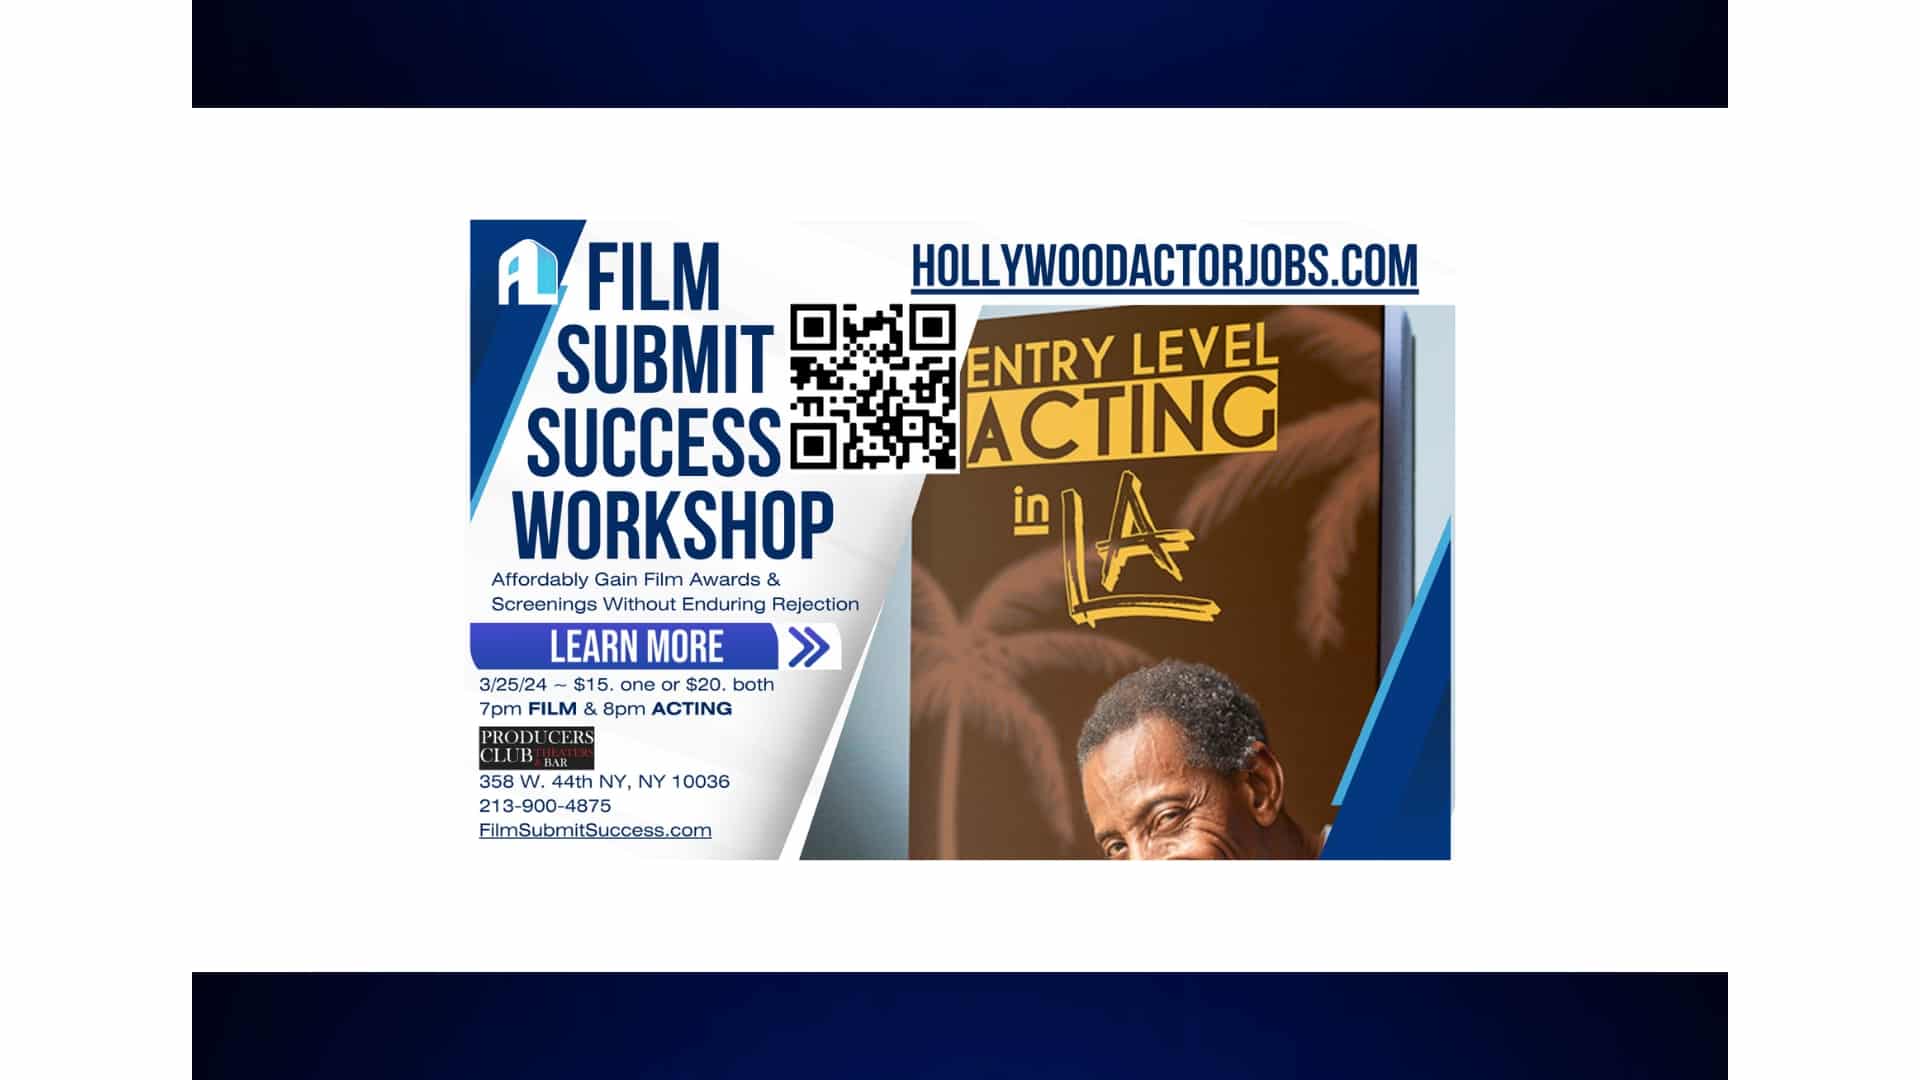 Film Submit Success Workshop - Phillip Walker